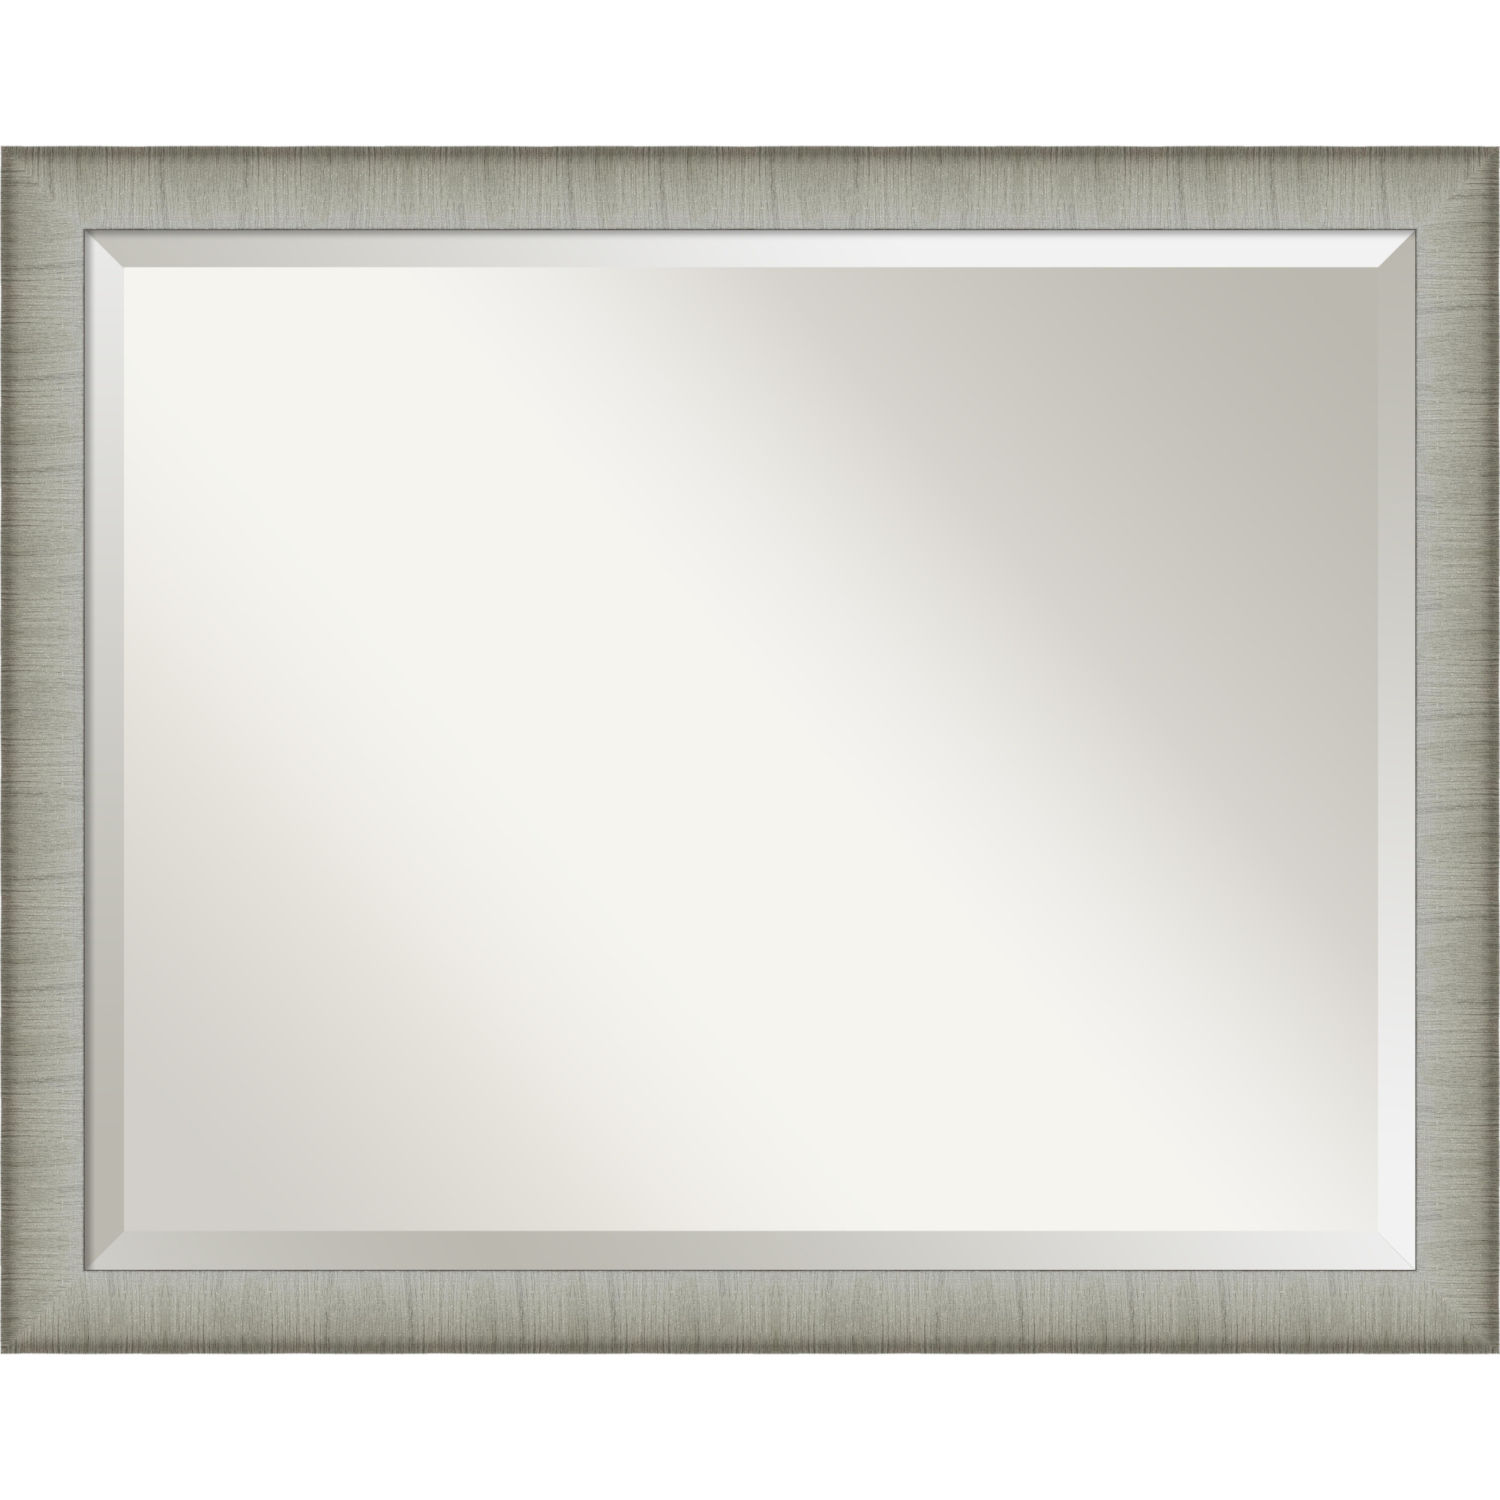 Elegant Pewter 31W X 25H-Inch Bathroom Vanity Wall Mirror